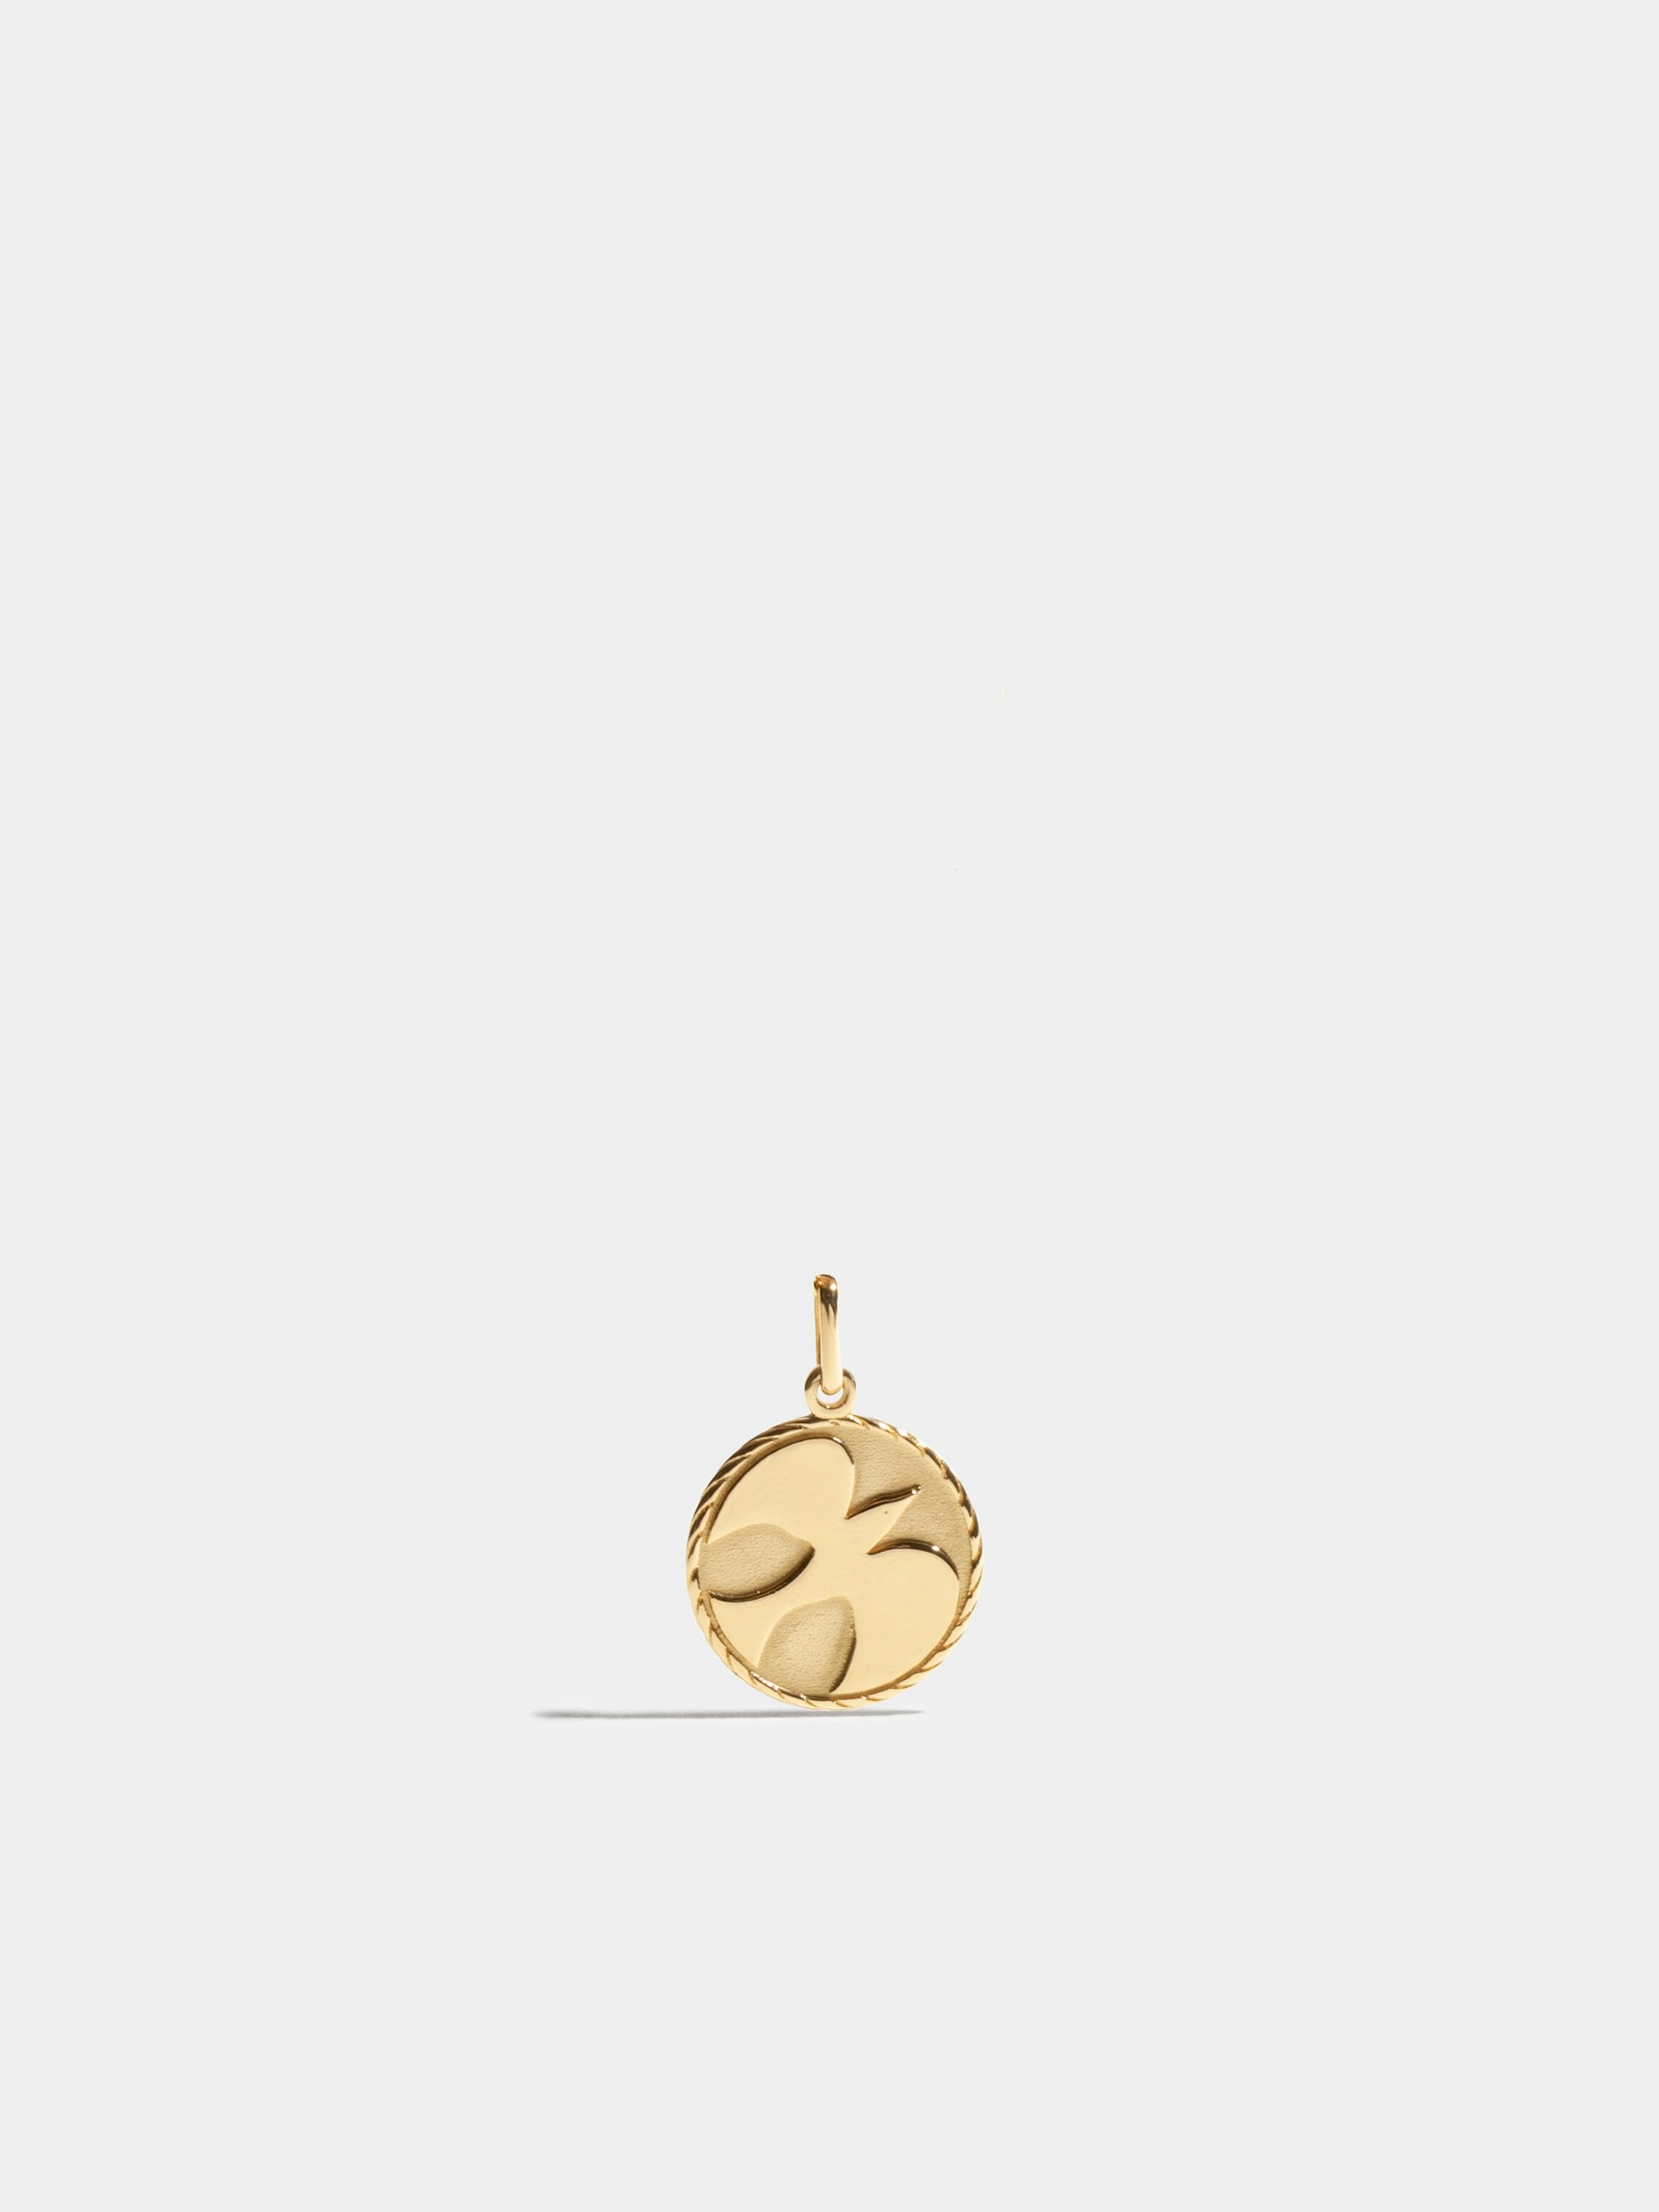 Médaille Colombe en Or jaune éthique 18 carats, certifié Fairmined, vendue avec une chaîne de 45cm.